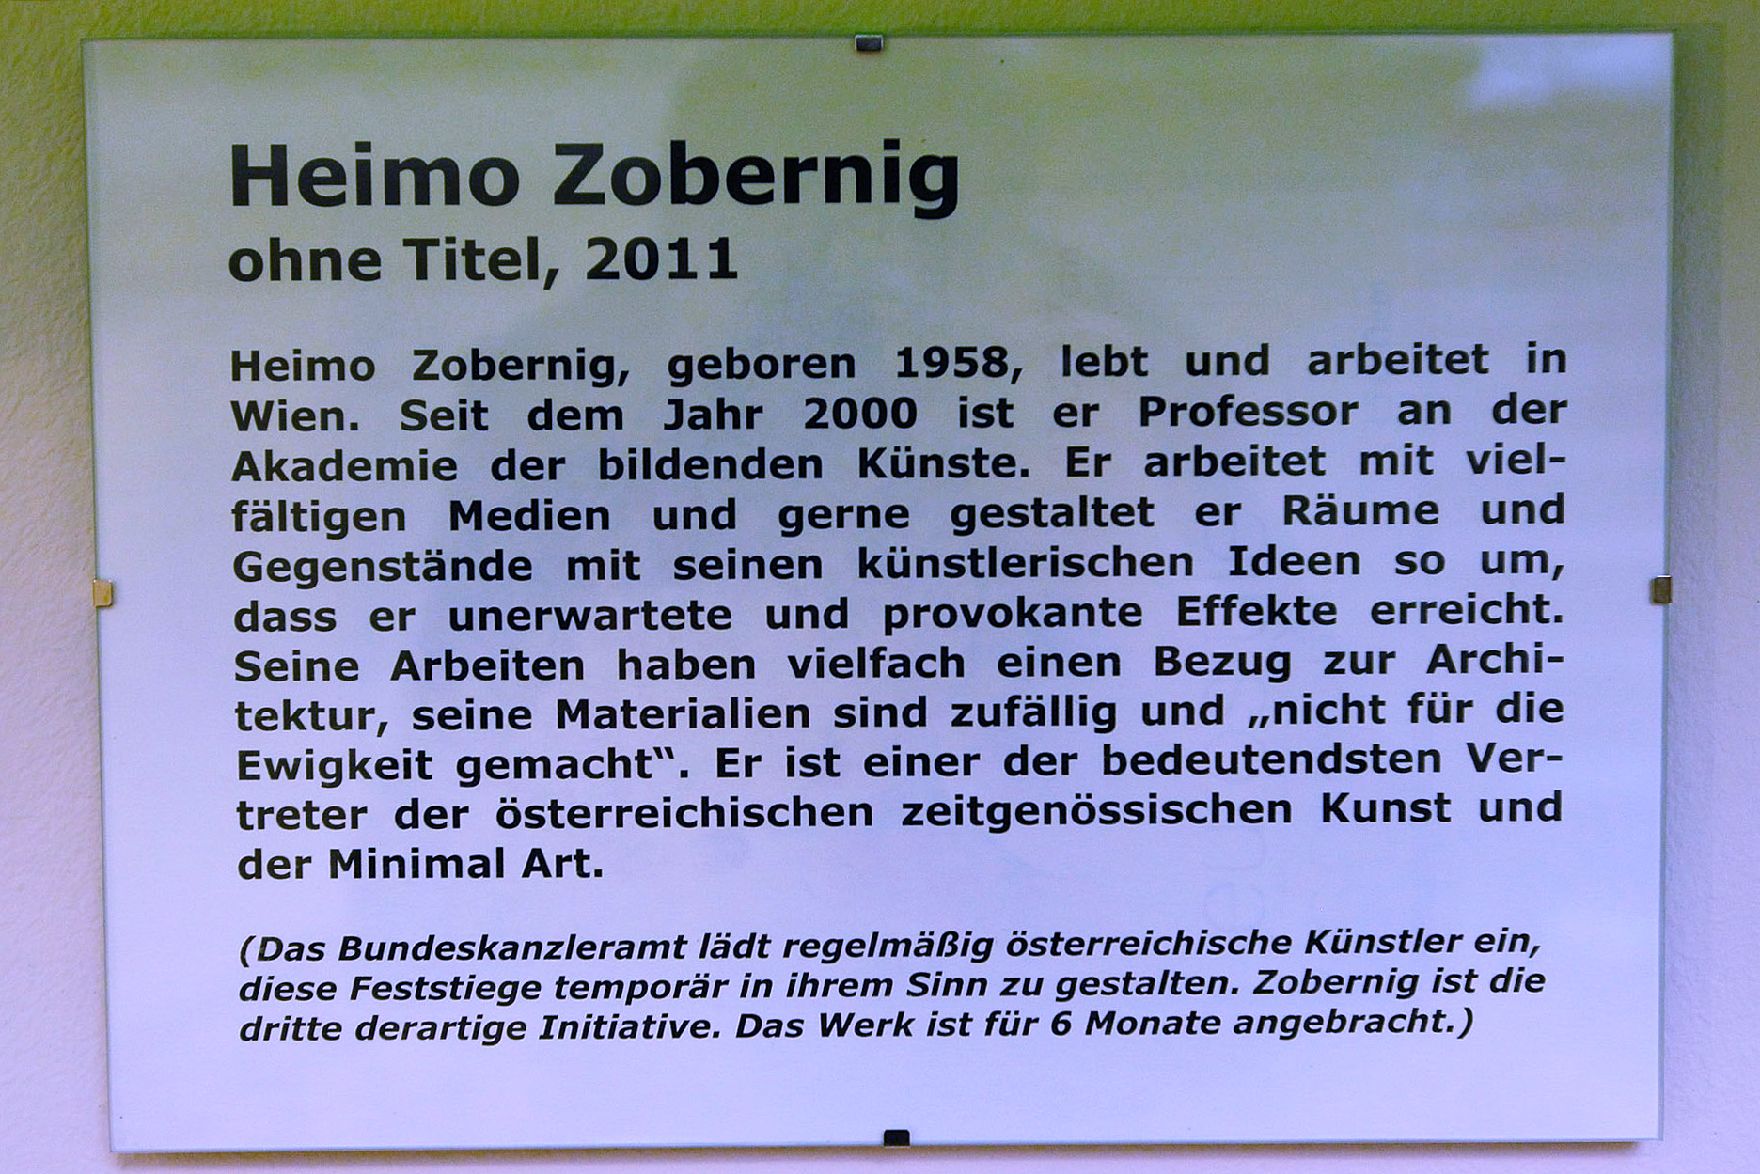 Infotafel zu dem Werk "Ohne Titel" von Heimo Zobernig ausgestellt auf der Feststiege im Bundeskanzleramt im Jahr 2011.